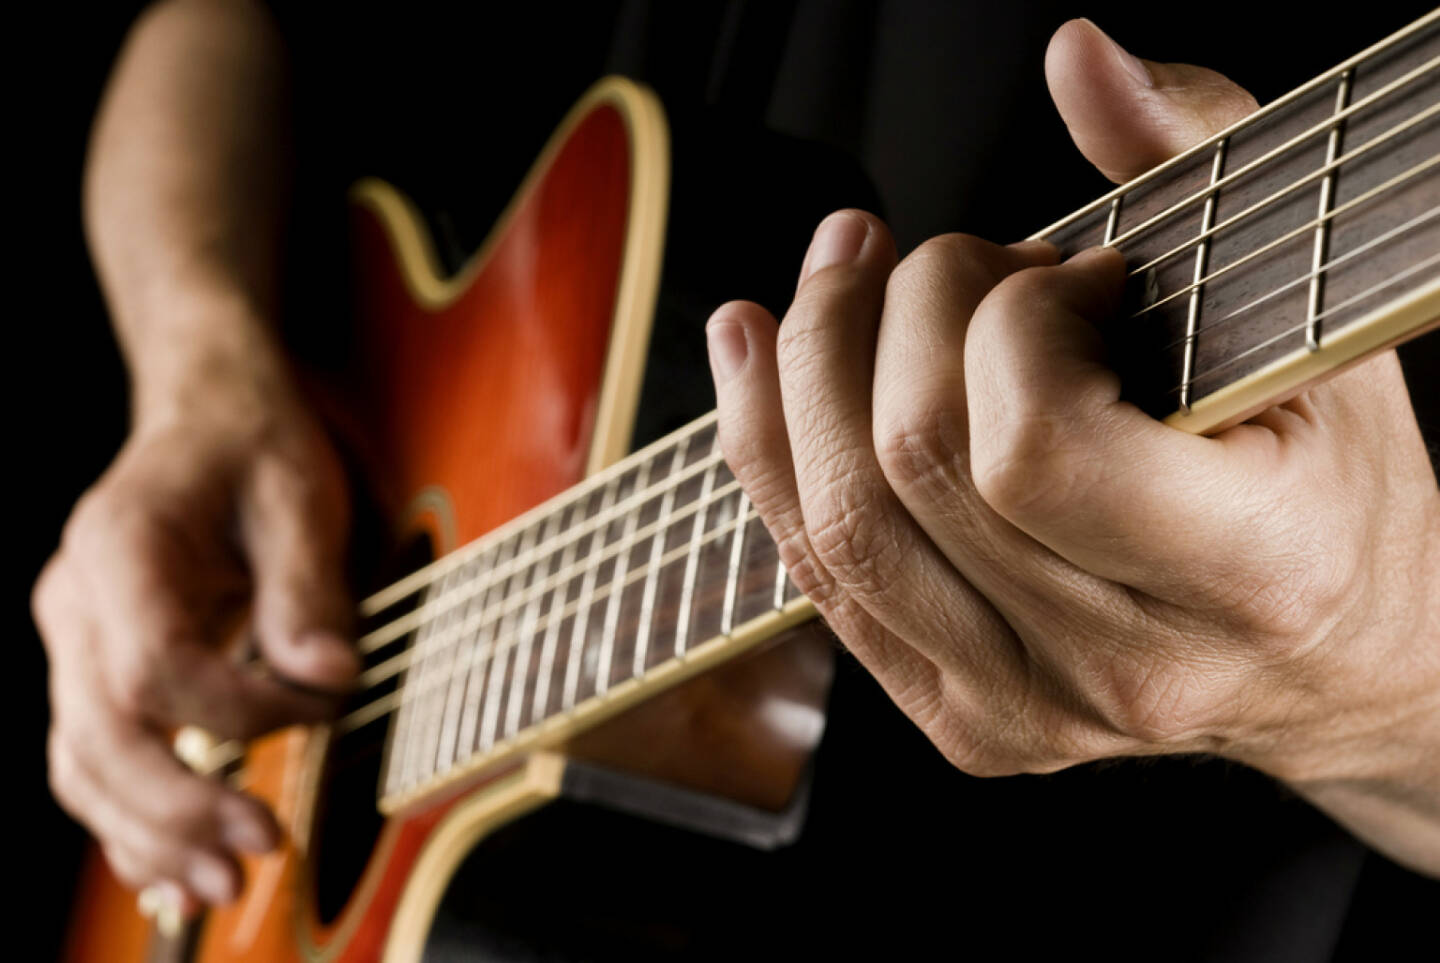 Gitarre, spielen, Musik, Saite, http://www.shutterstock.com/de/pic-200741816/stock-photo-guitarist-hands-playing-country-guitar.html 